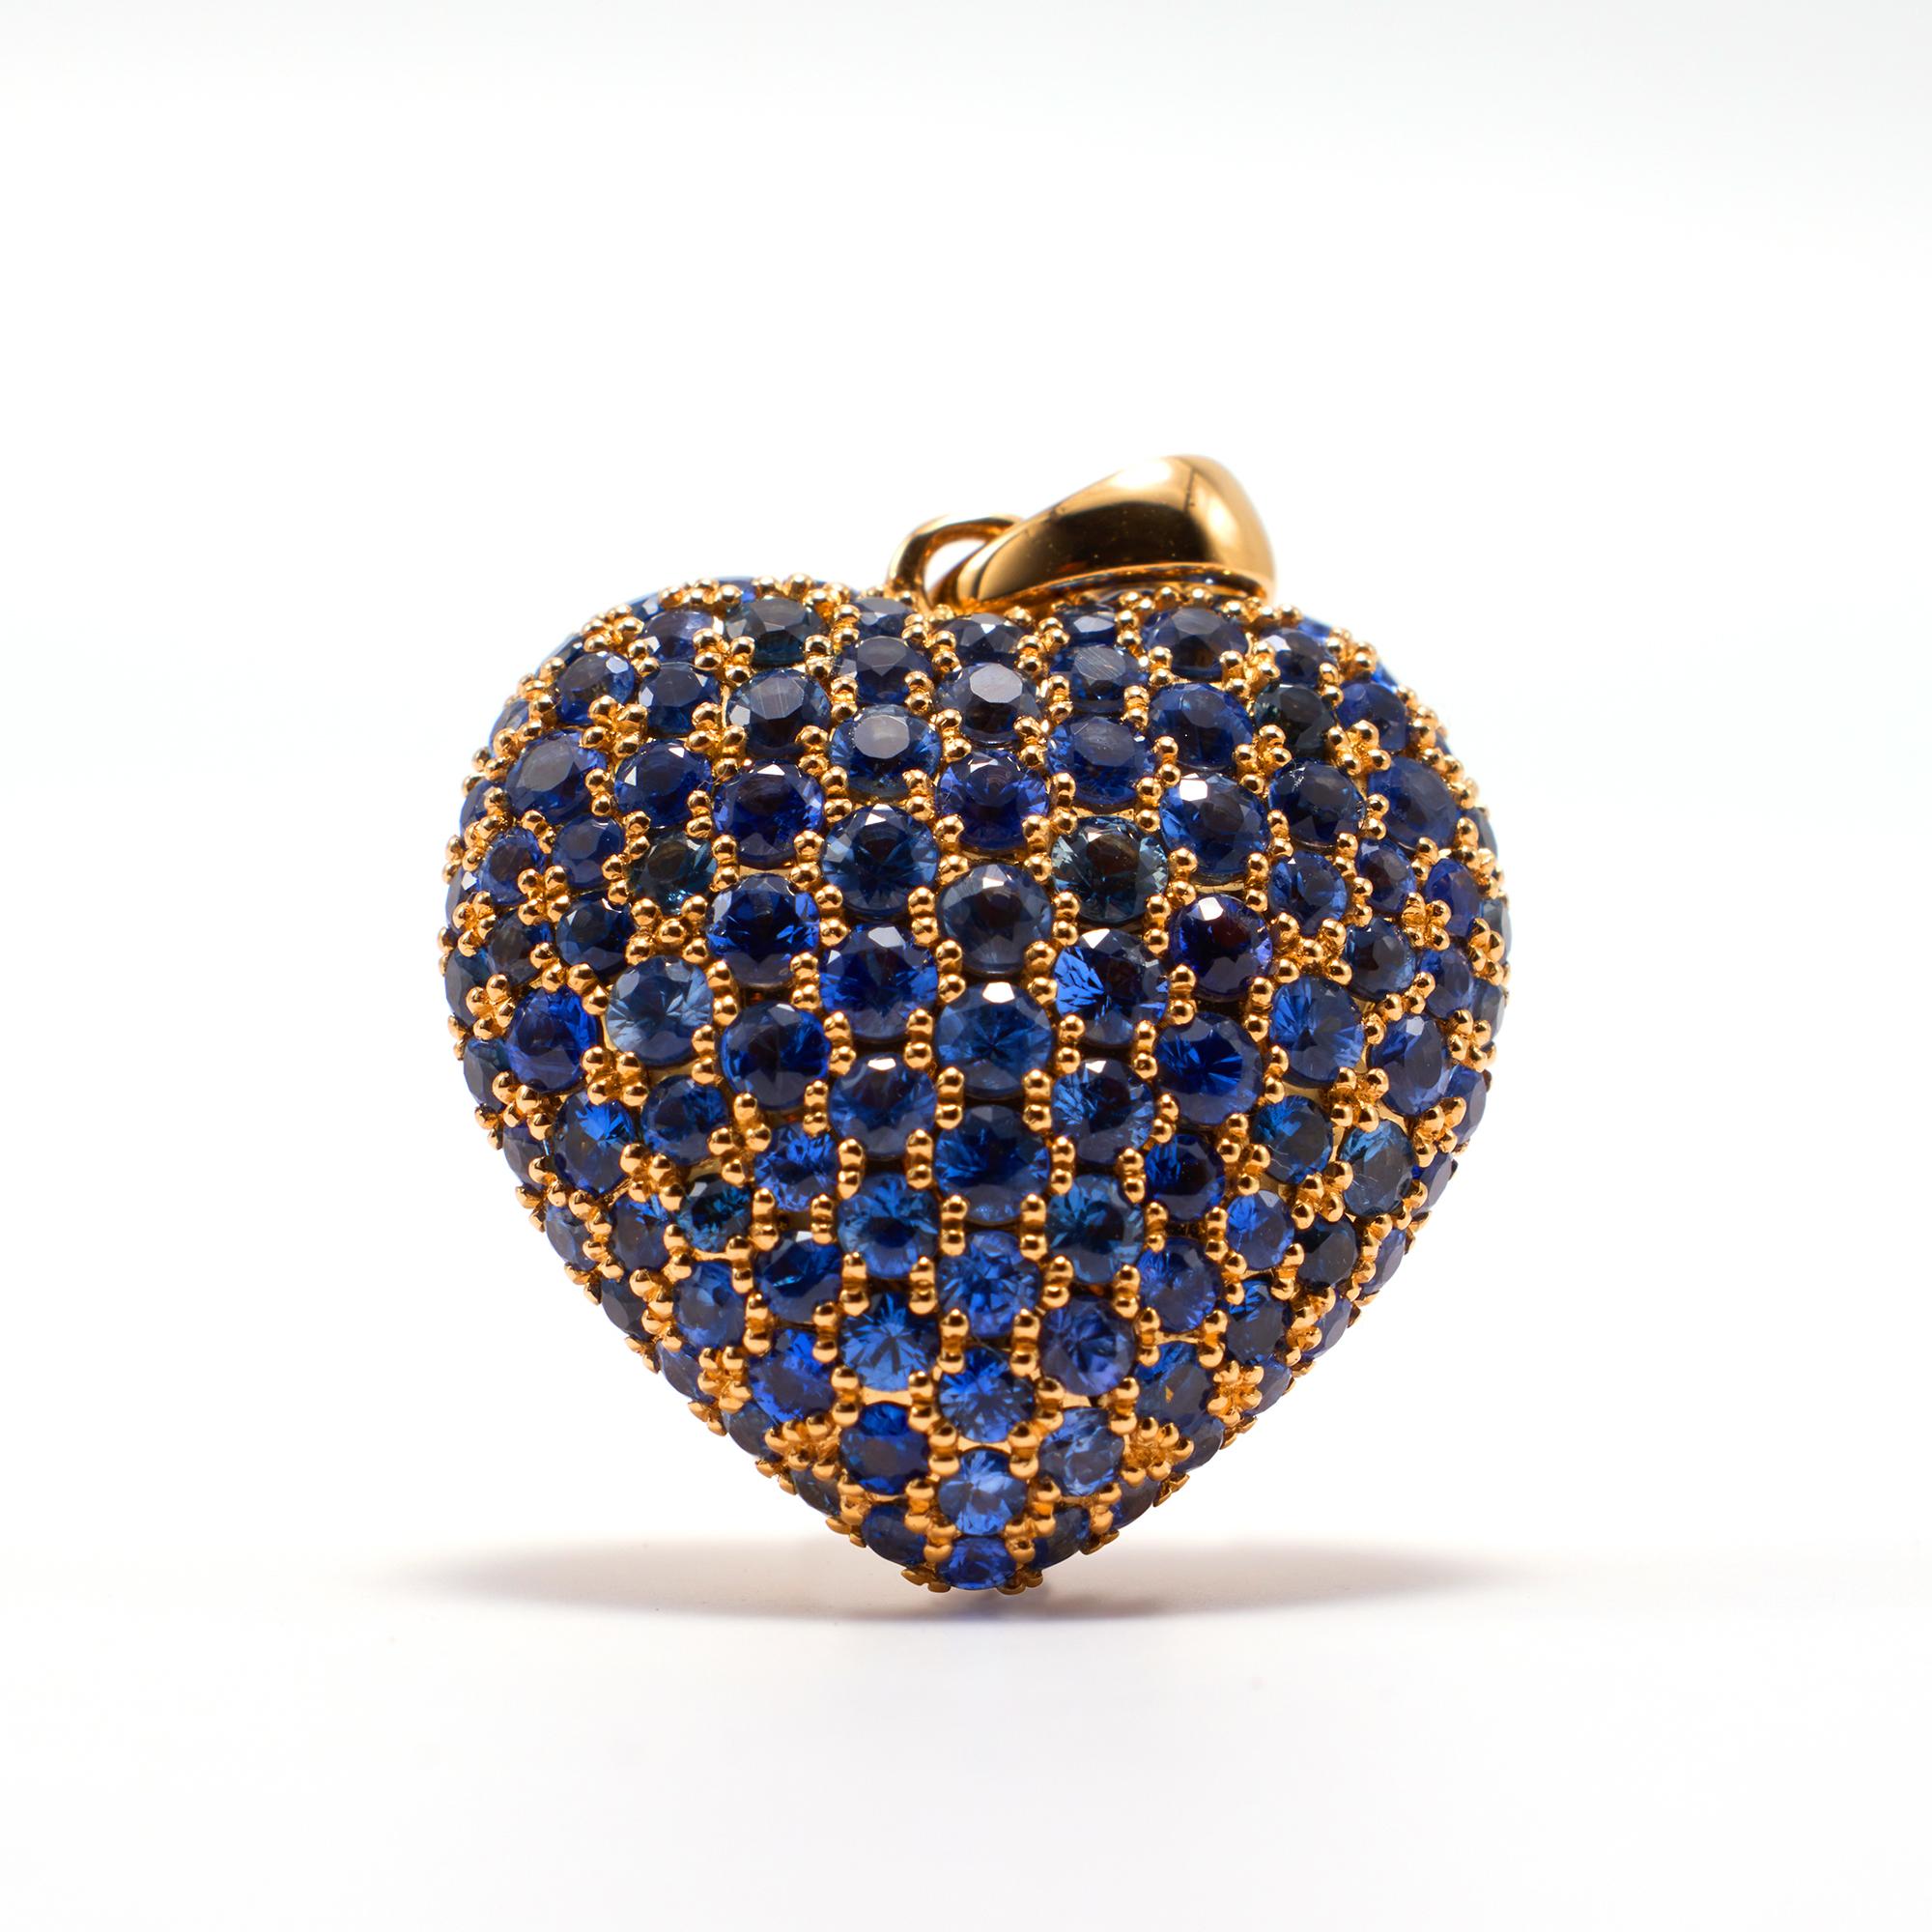 Brilliant Cut 3 Carat Blue Sapphire Heart Pendant Set in 9 Grams 18k Gold For Sale